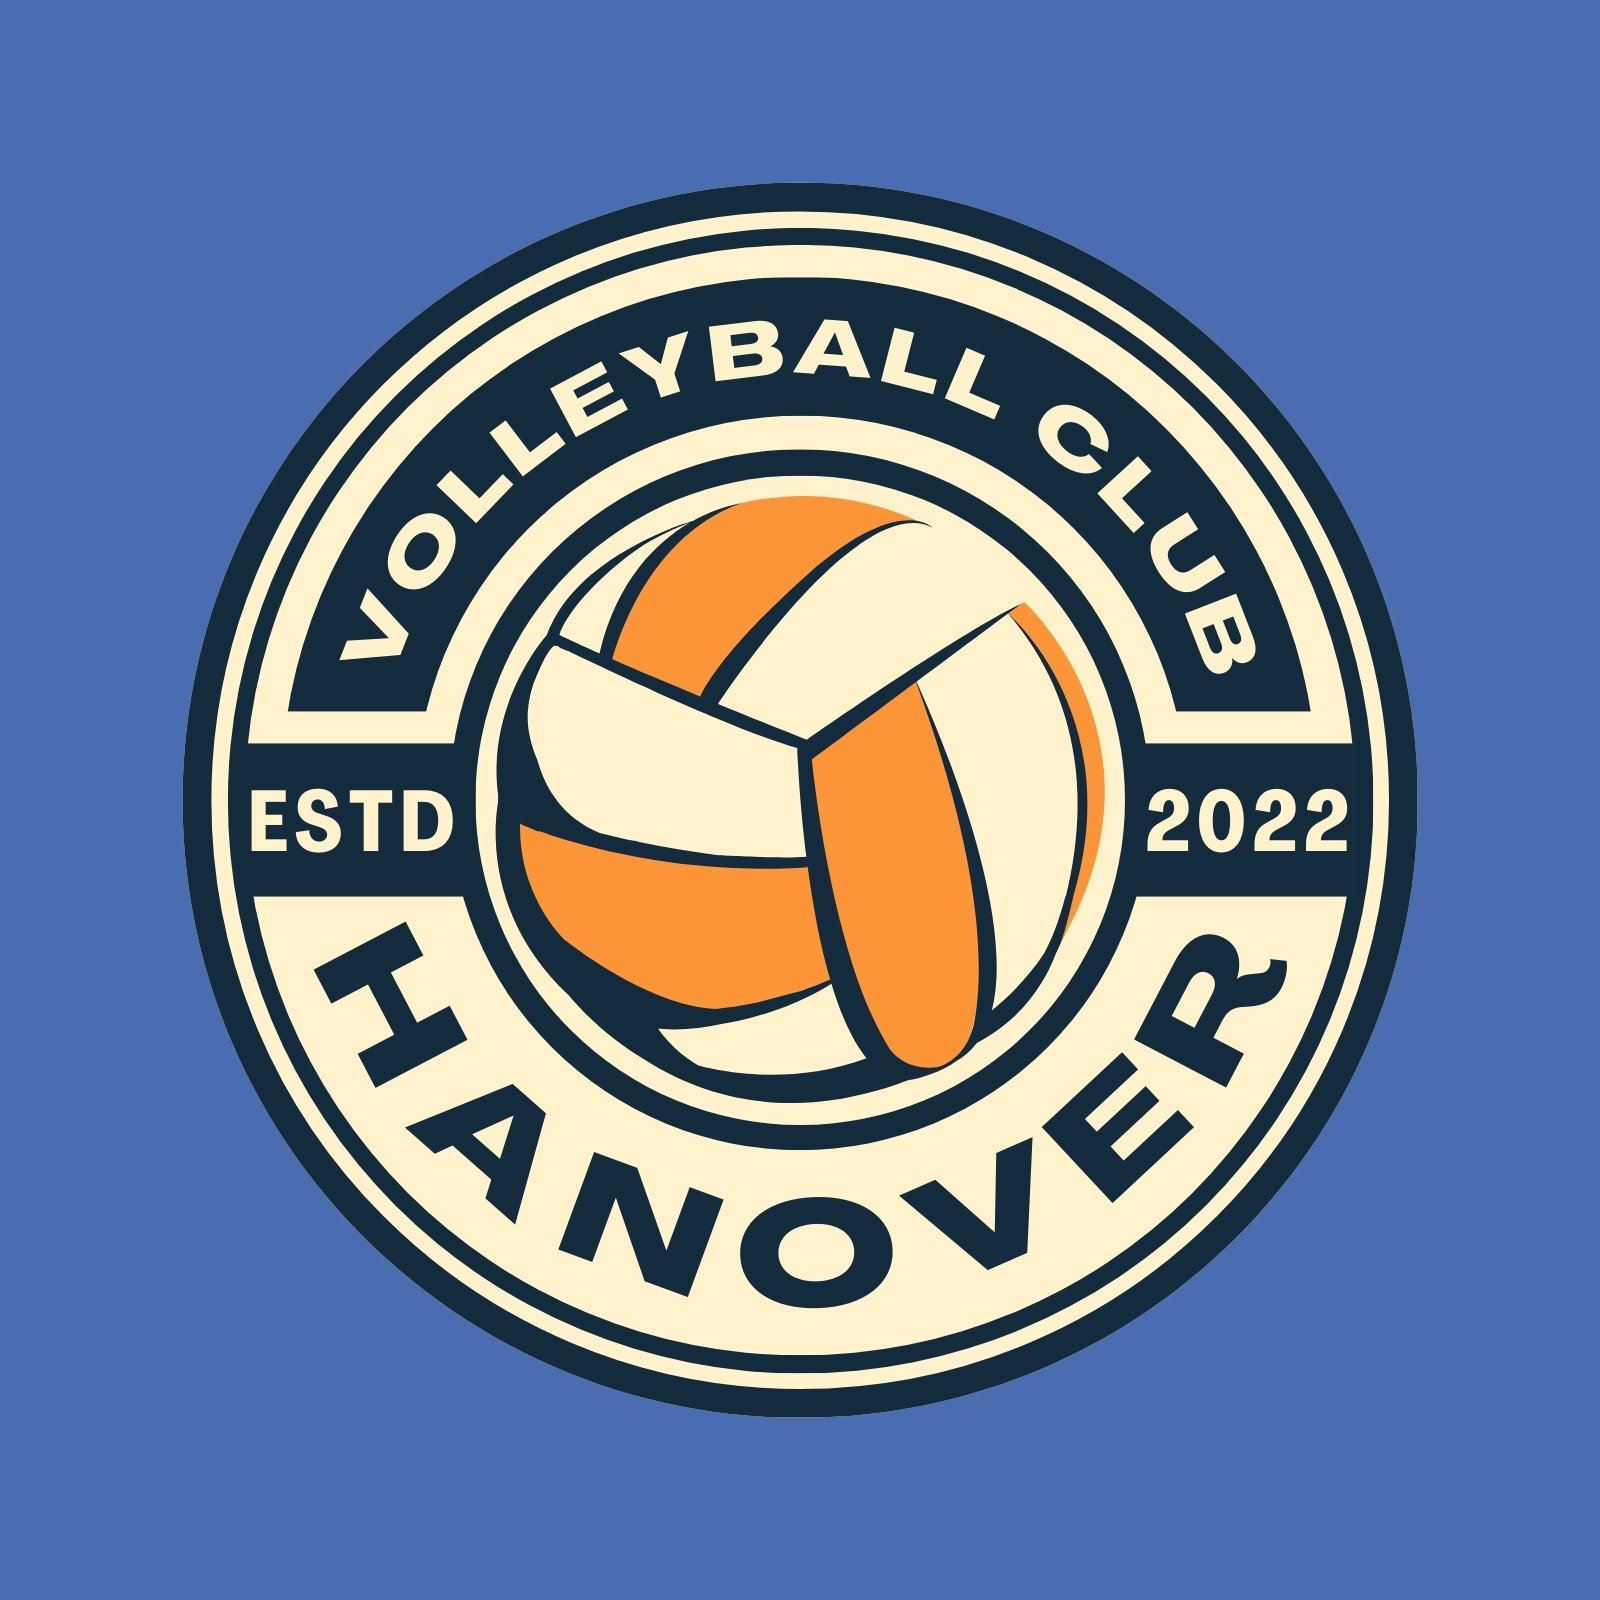 Sports club logo, Logo design contest